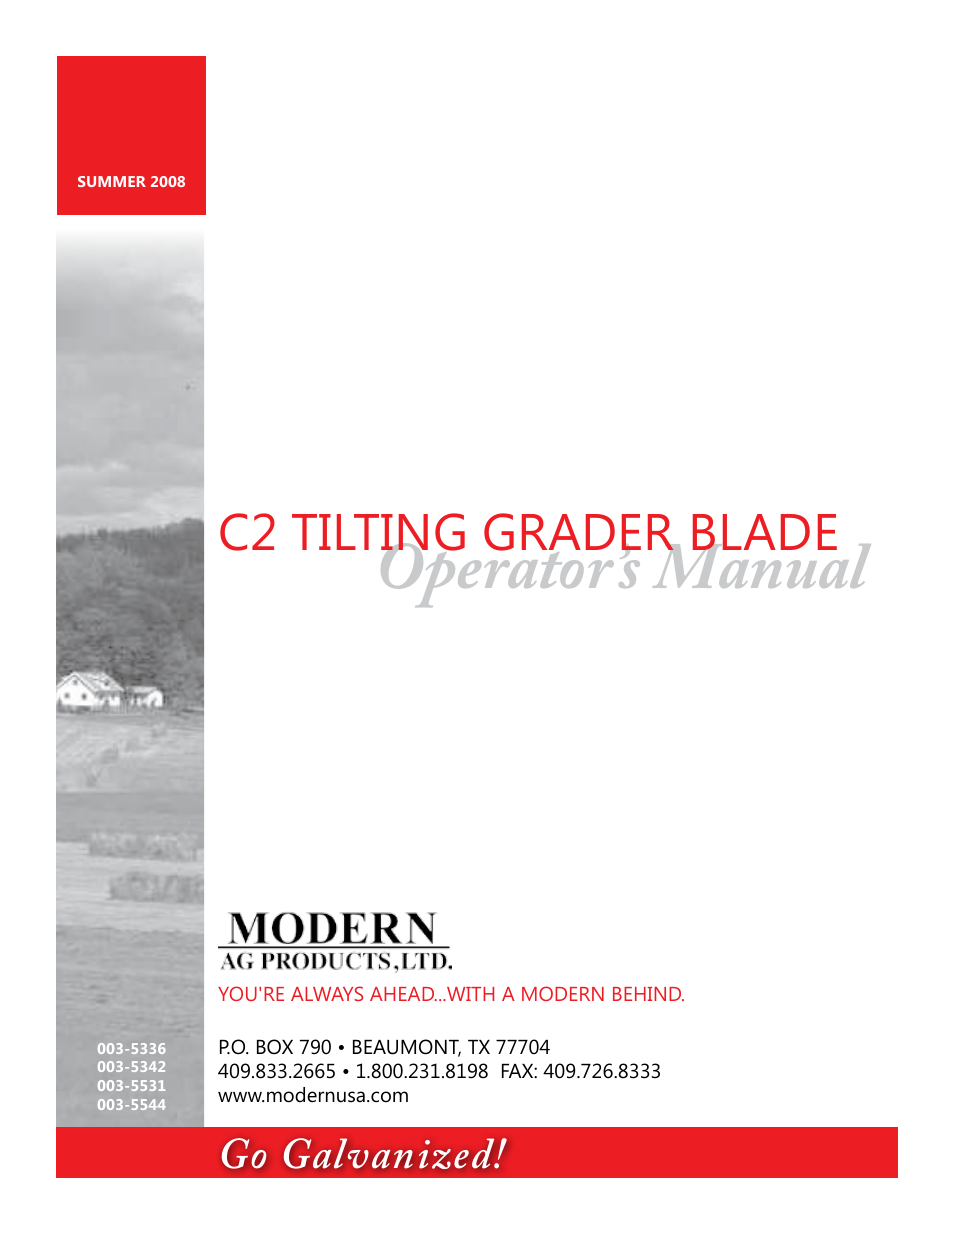 Tilting Grader Blade